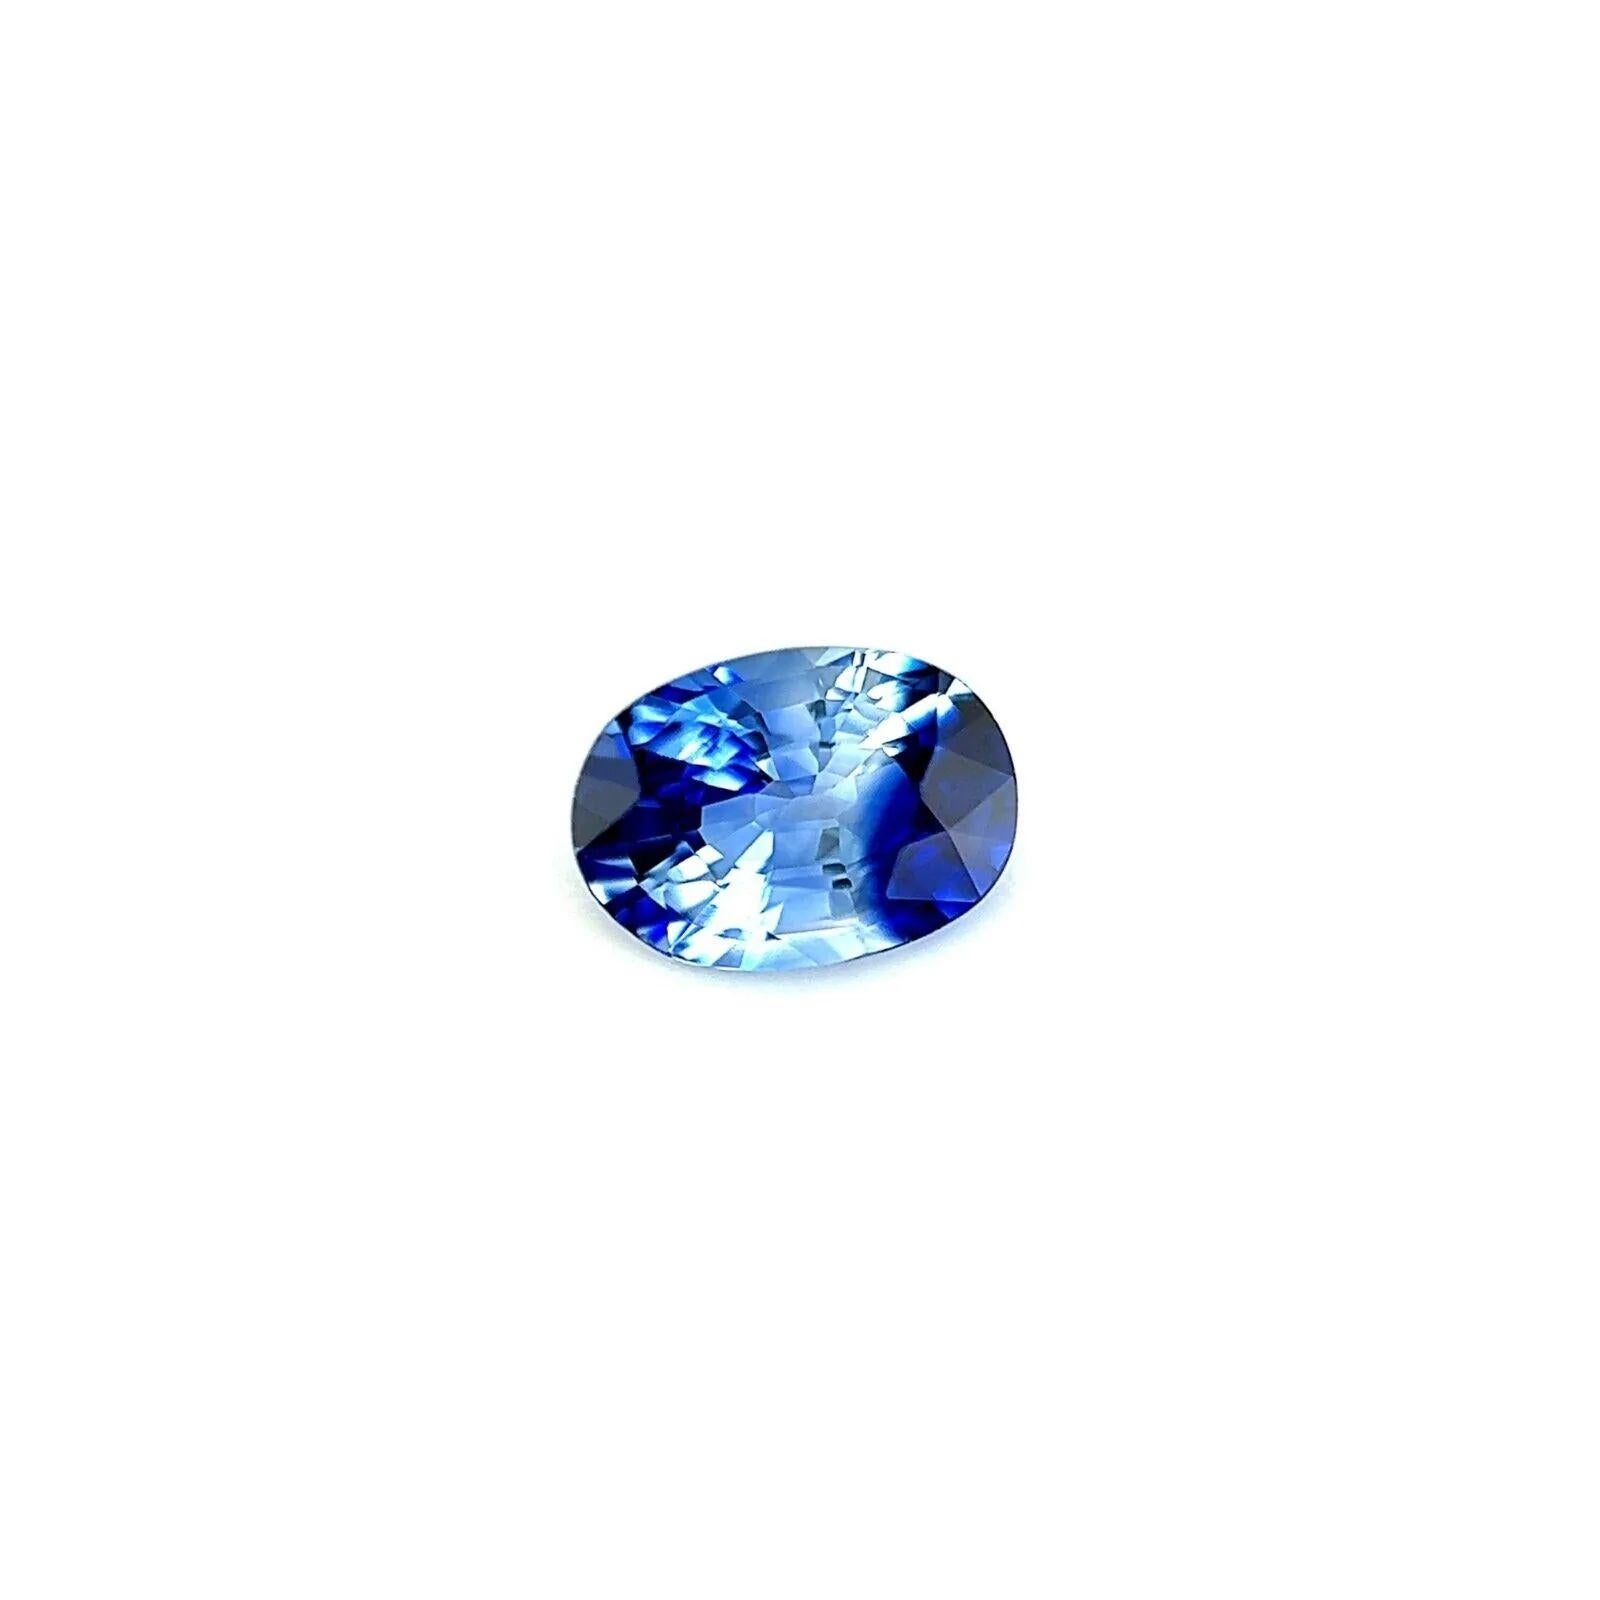 Einzigartige Seltene Ceylon Blau Lila Saphir 0,81ct Oval Schliff Blau Seltene 6,5x4,5mm VS

Einzigartiger Ceylon Purple Blue Sapphire Edelstein.
0,81 Karat Saphir mit einer seltenen und einzigartigen violettblauen Farbspaltung.
Auch hat eine sehr